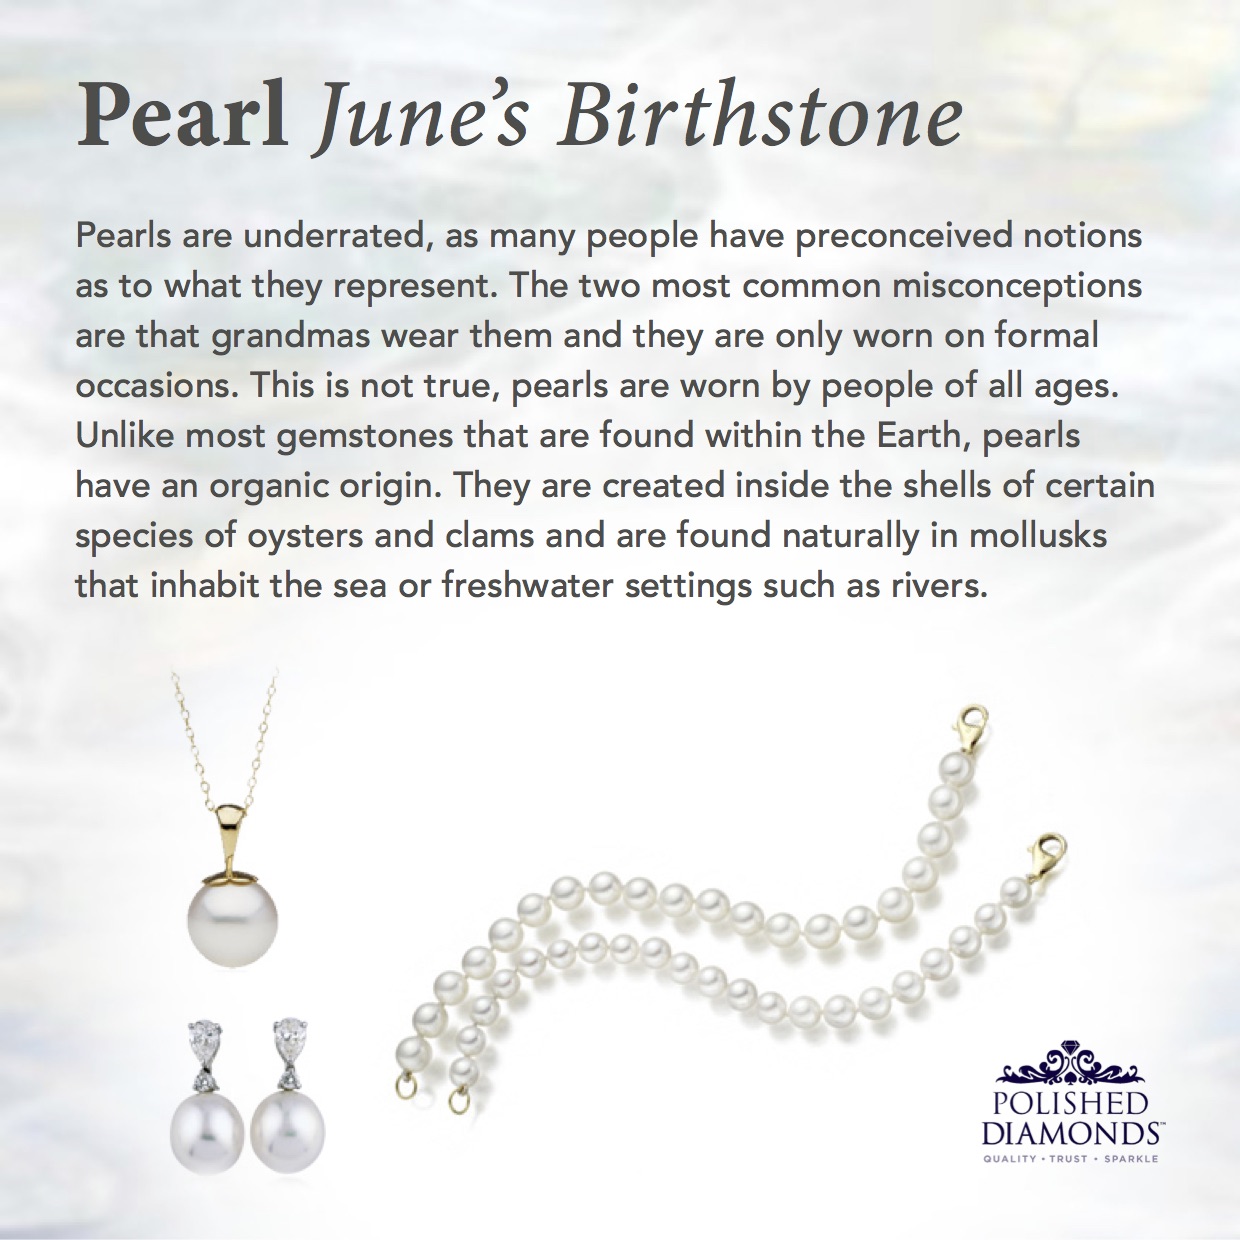 Birthstone June Pearl